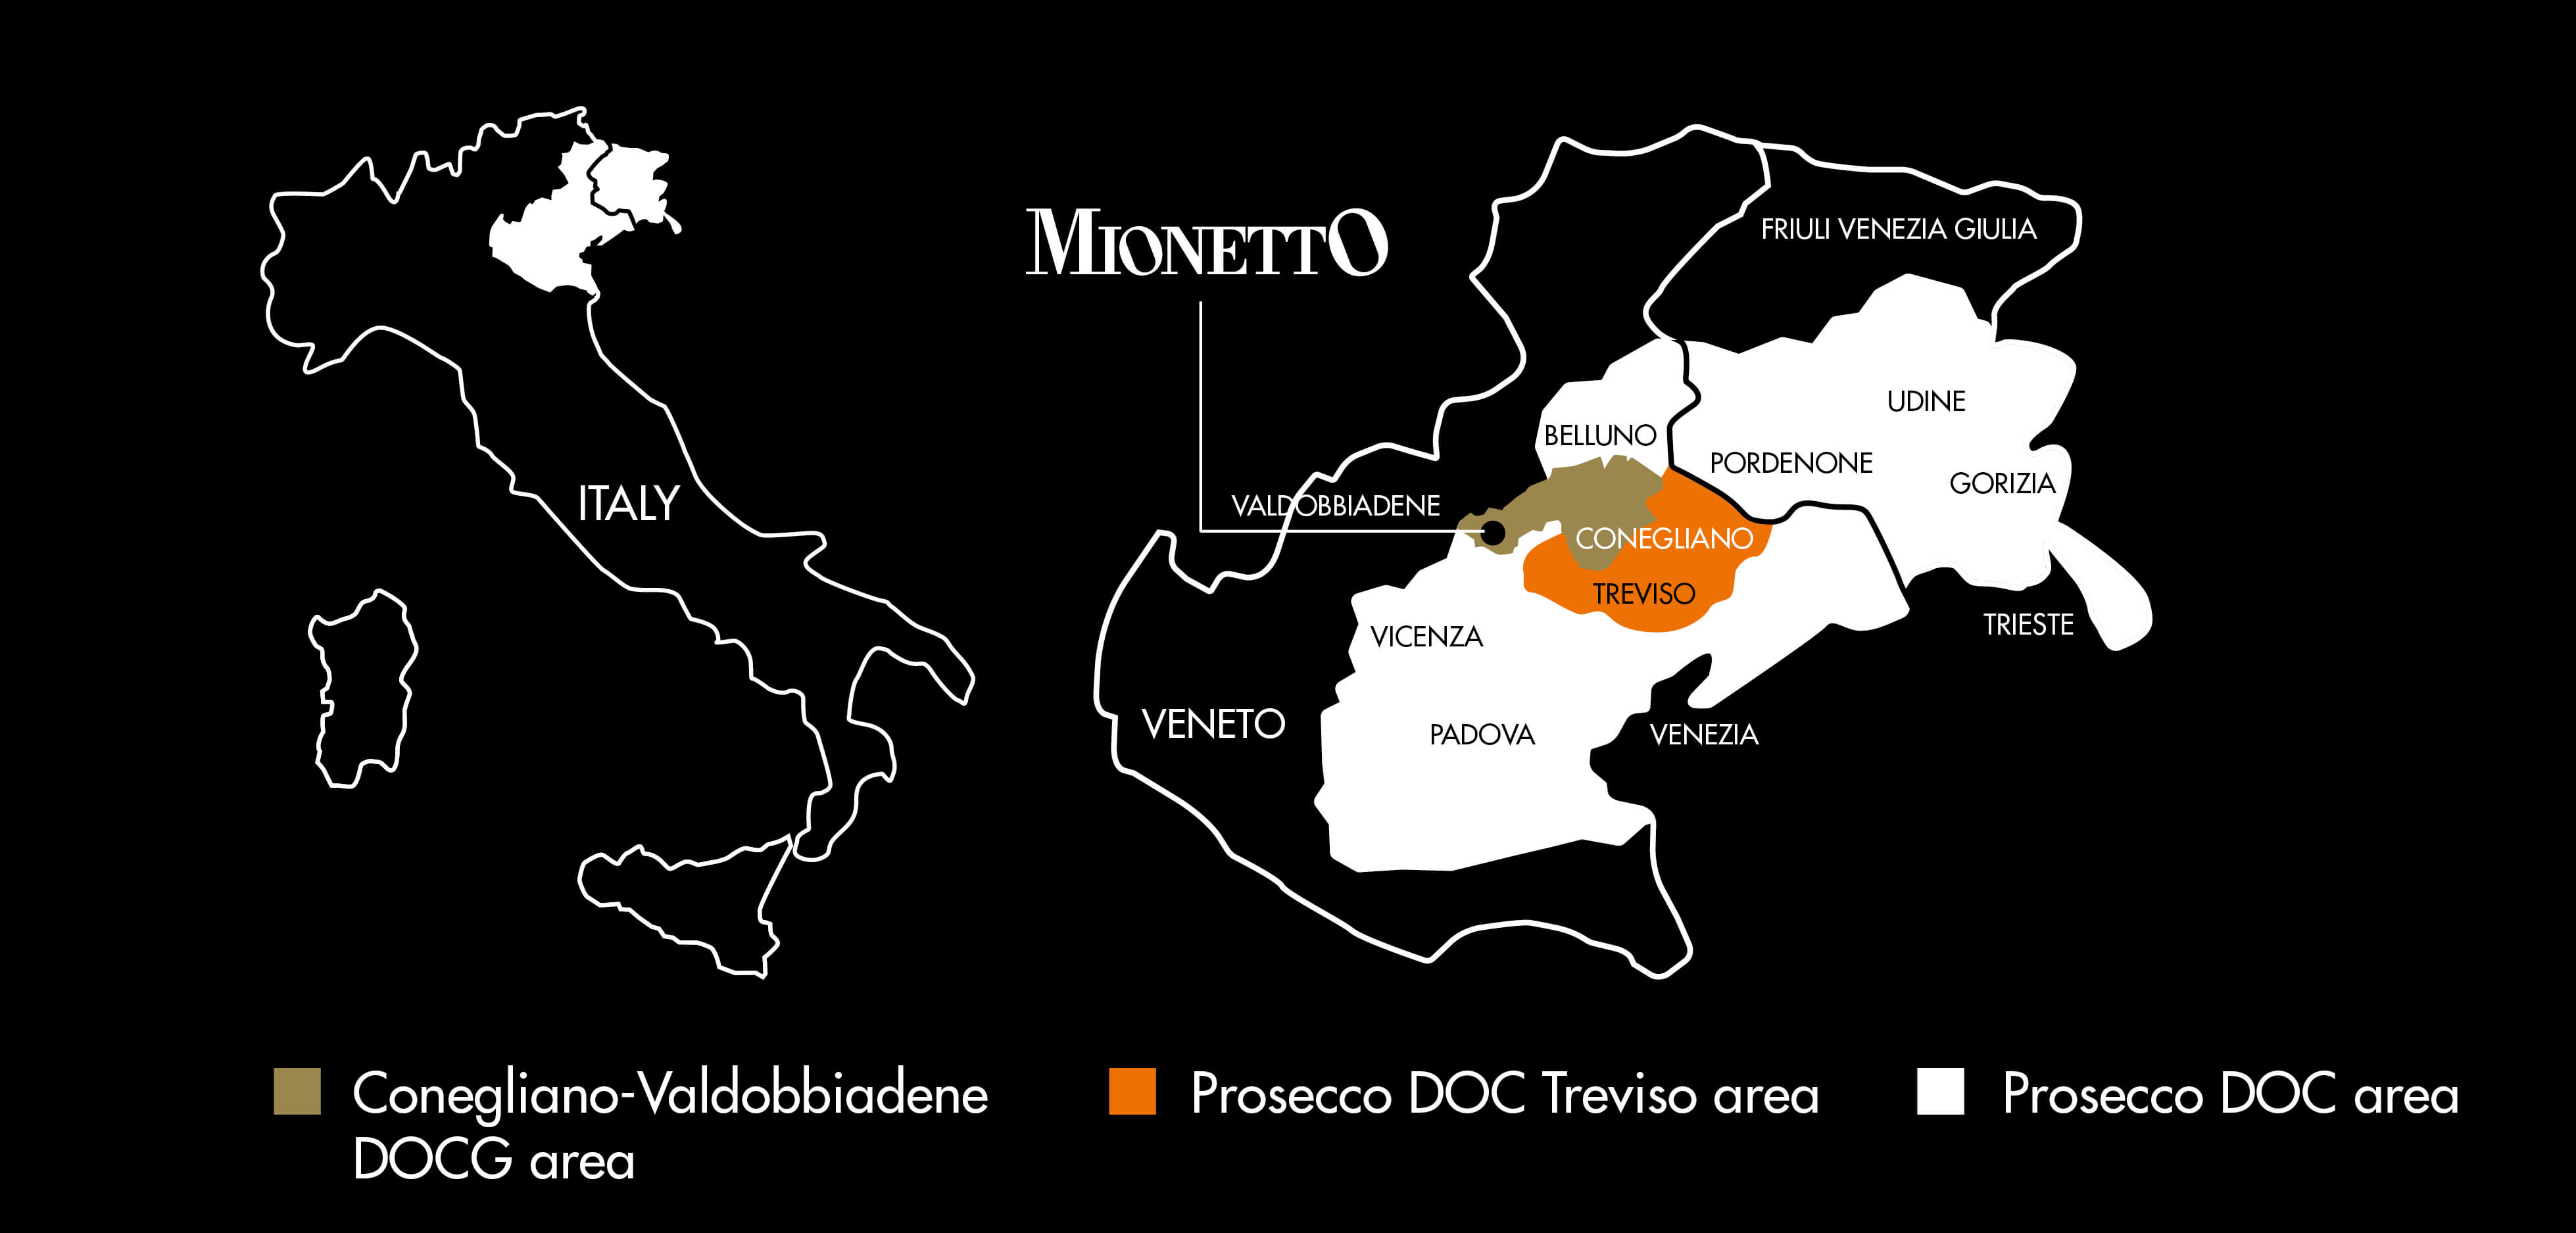 Mionetto od ponad wieku jest na terenie Prosecco